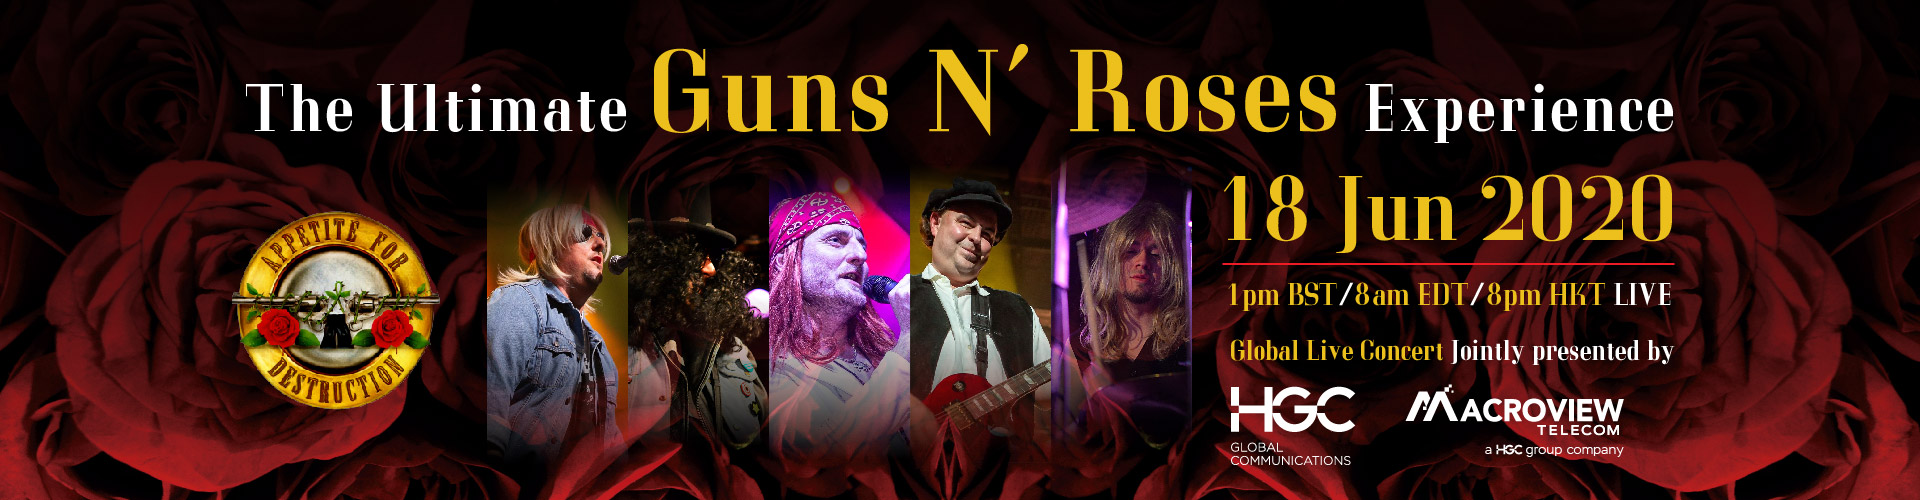 HGC x Macroview Gun N' Roses virtual live tribute concert